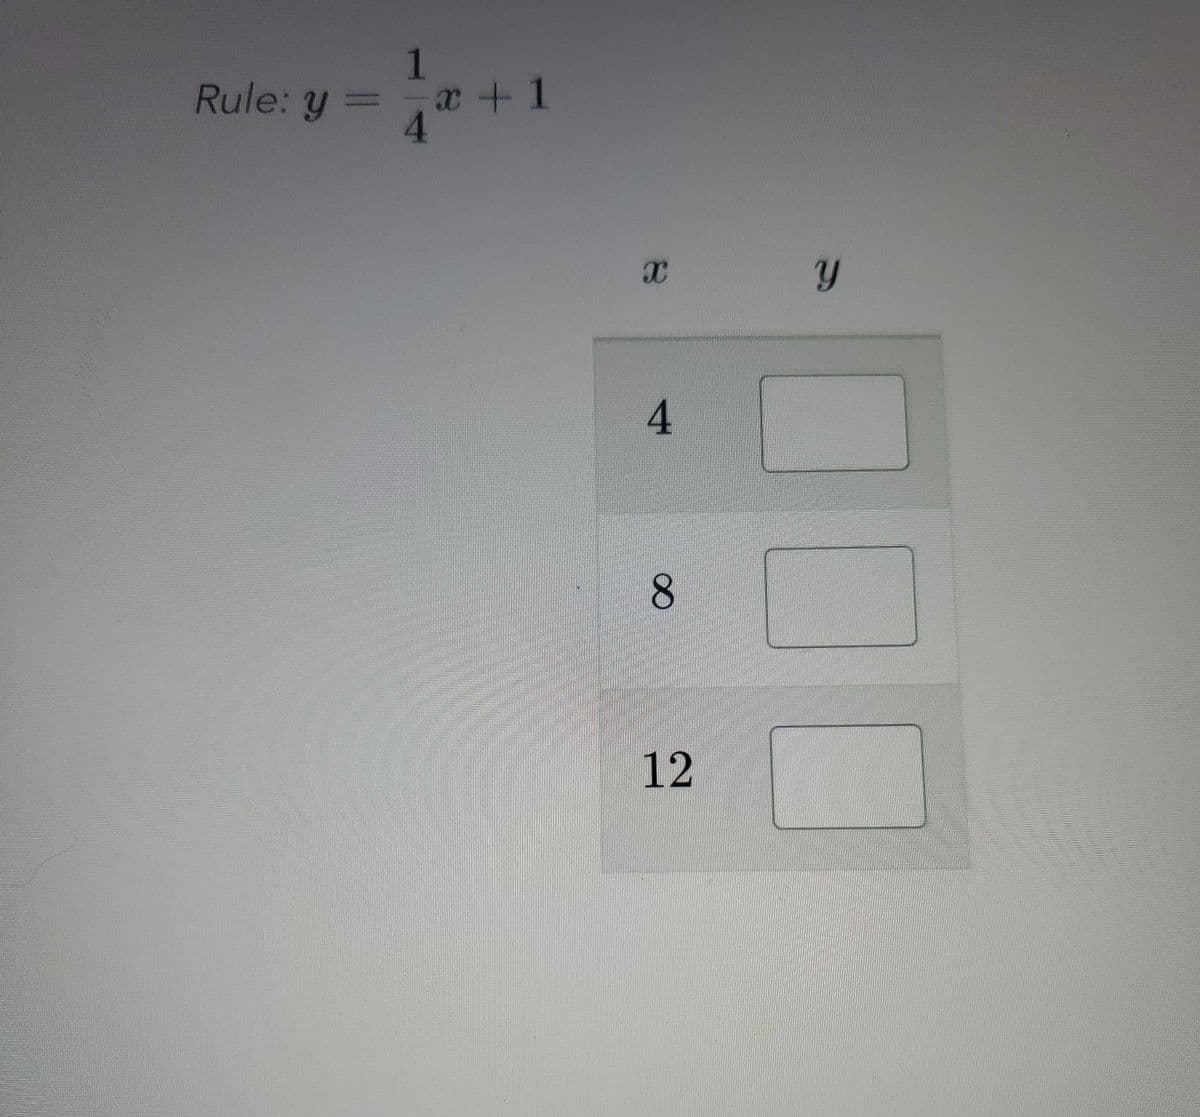 Rule: y =
1
x + 1
4
8.
12
